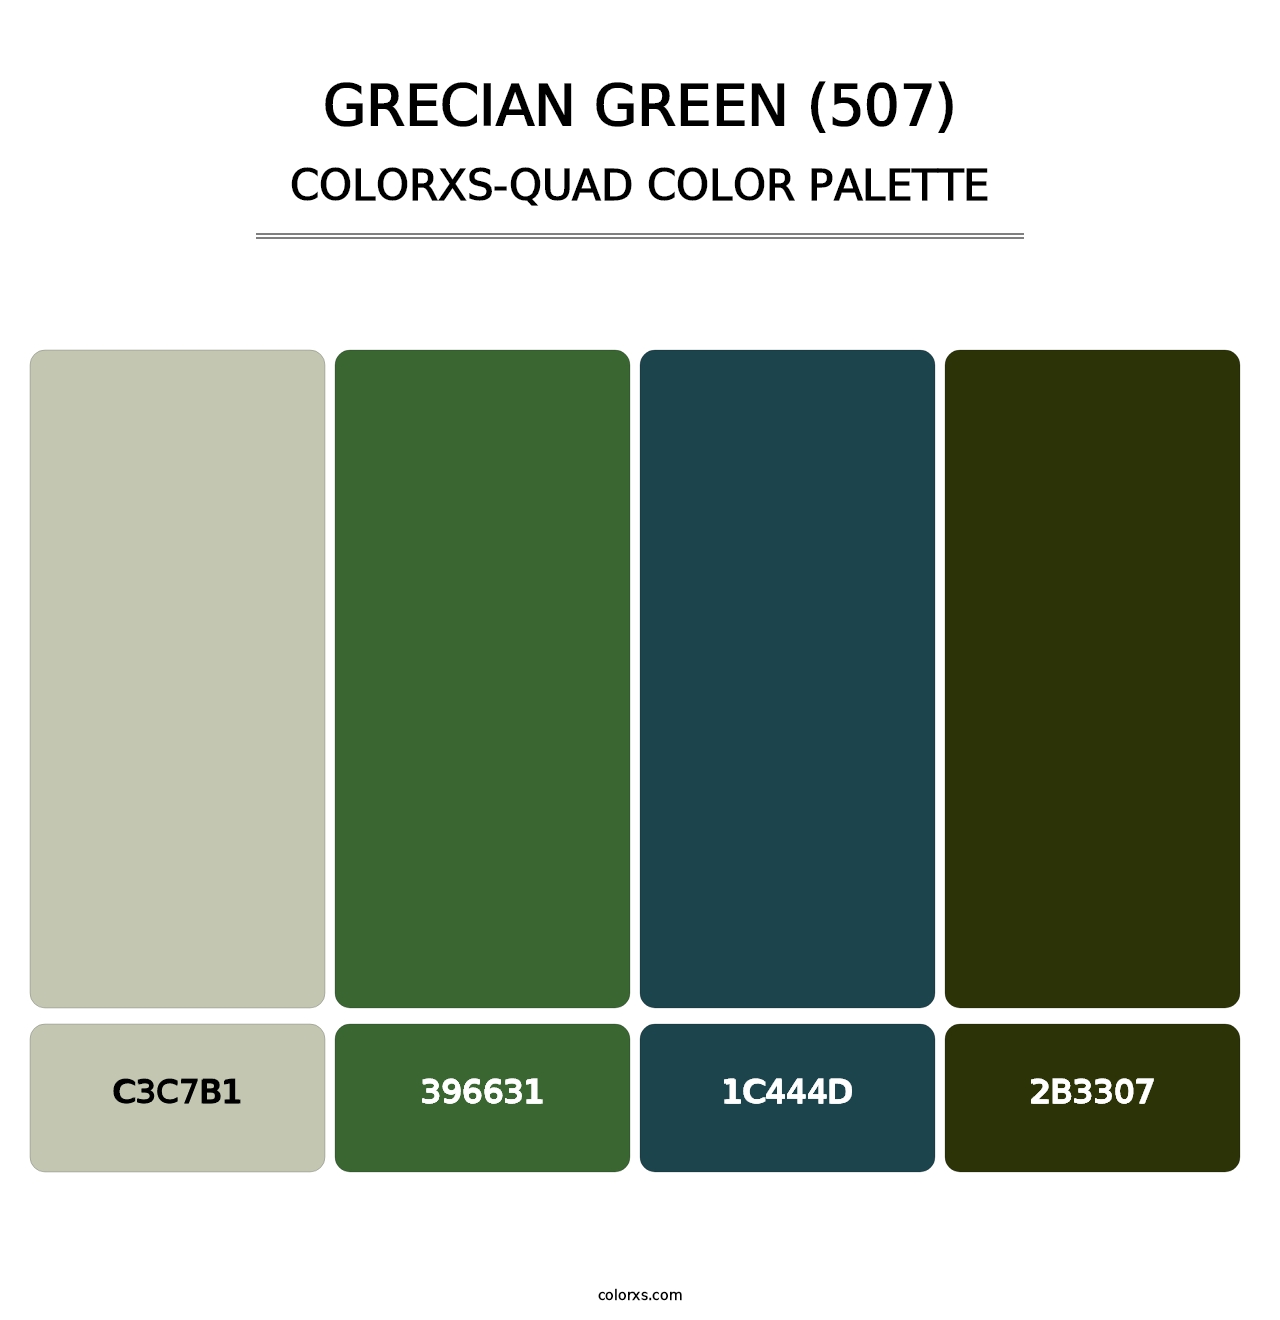 Grecian Green (507) - Colorxs Quad Palette